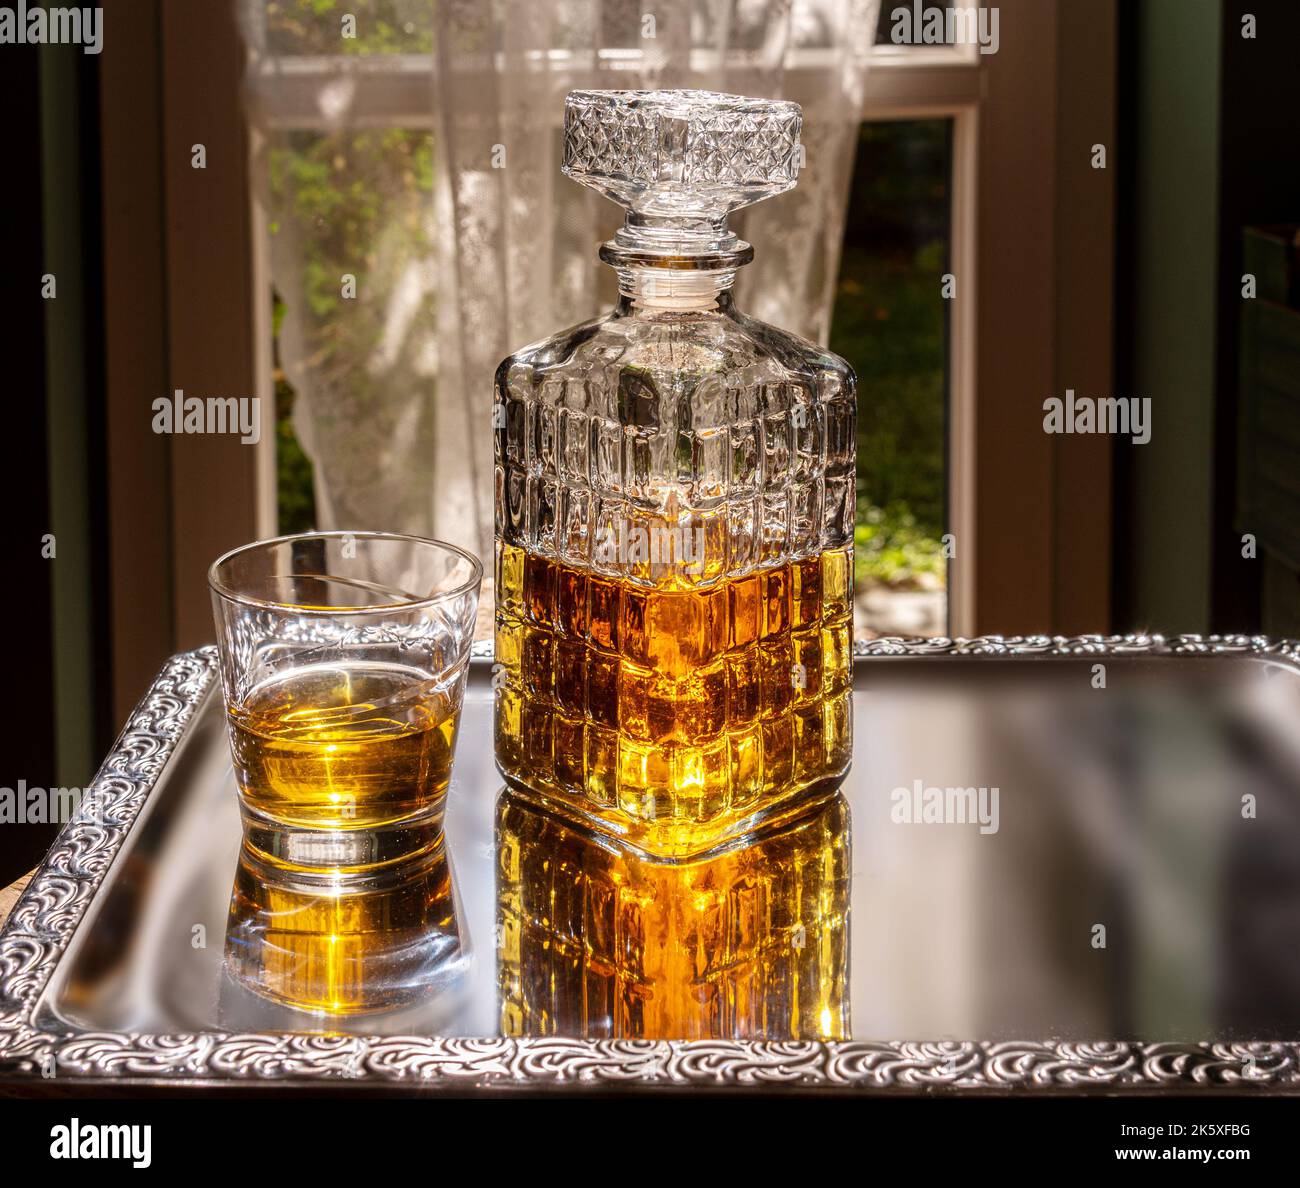 Whisky dans une bouteille en verre cristal décorée, whisky ou bourbon dans une bouteille vintage avec verre sur plateau argenté décoré dans le rétro-éclairage de la chambre Banque D'Images